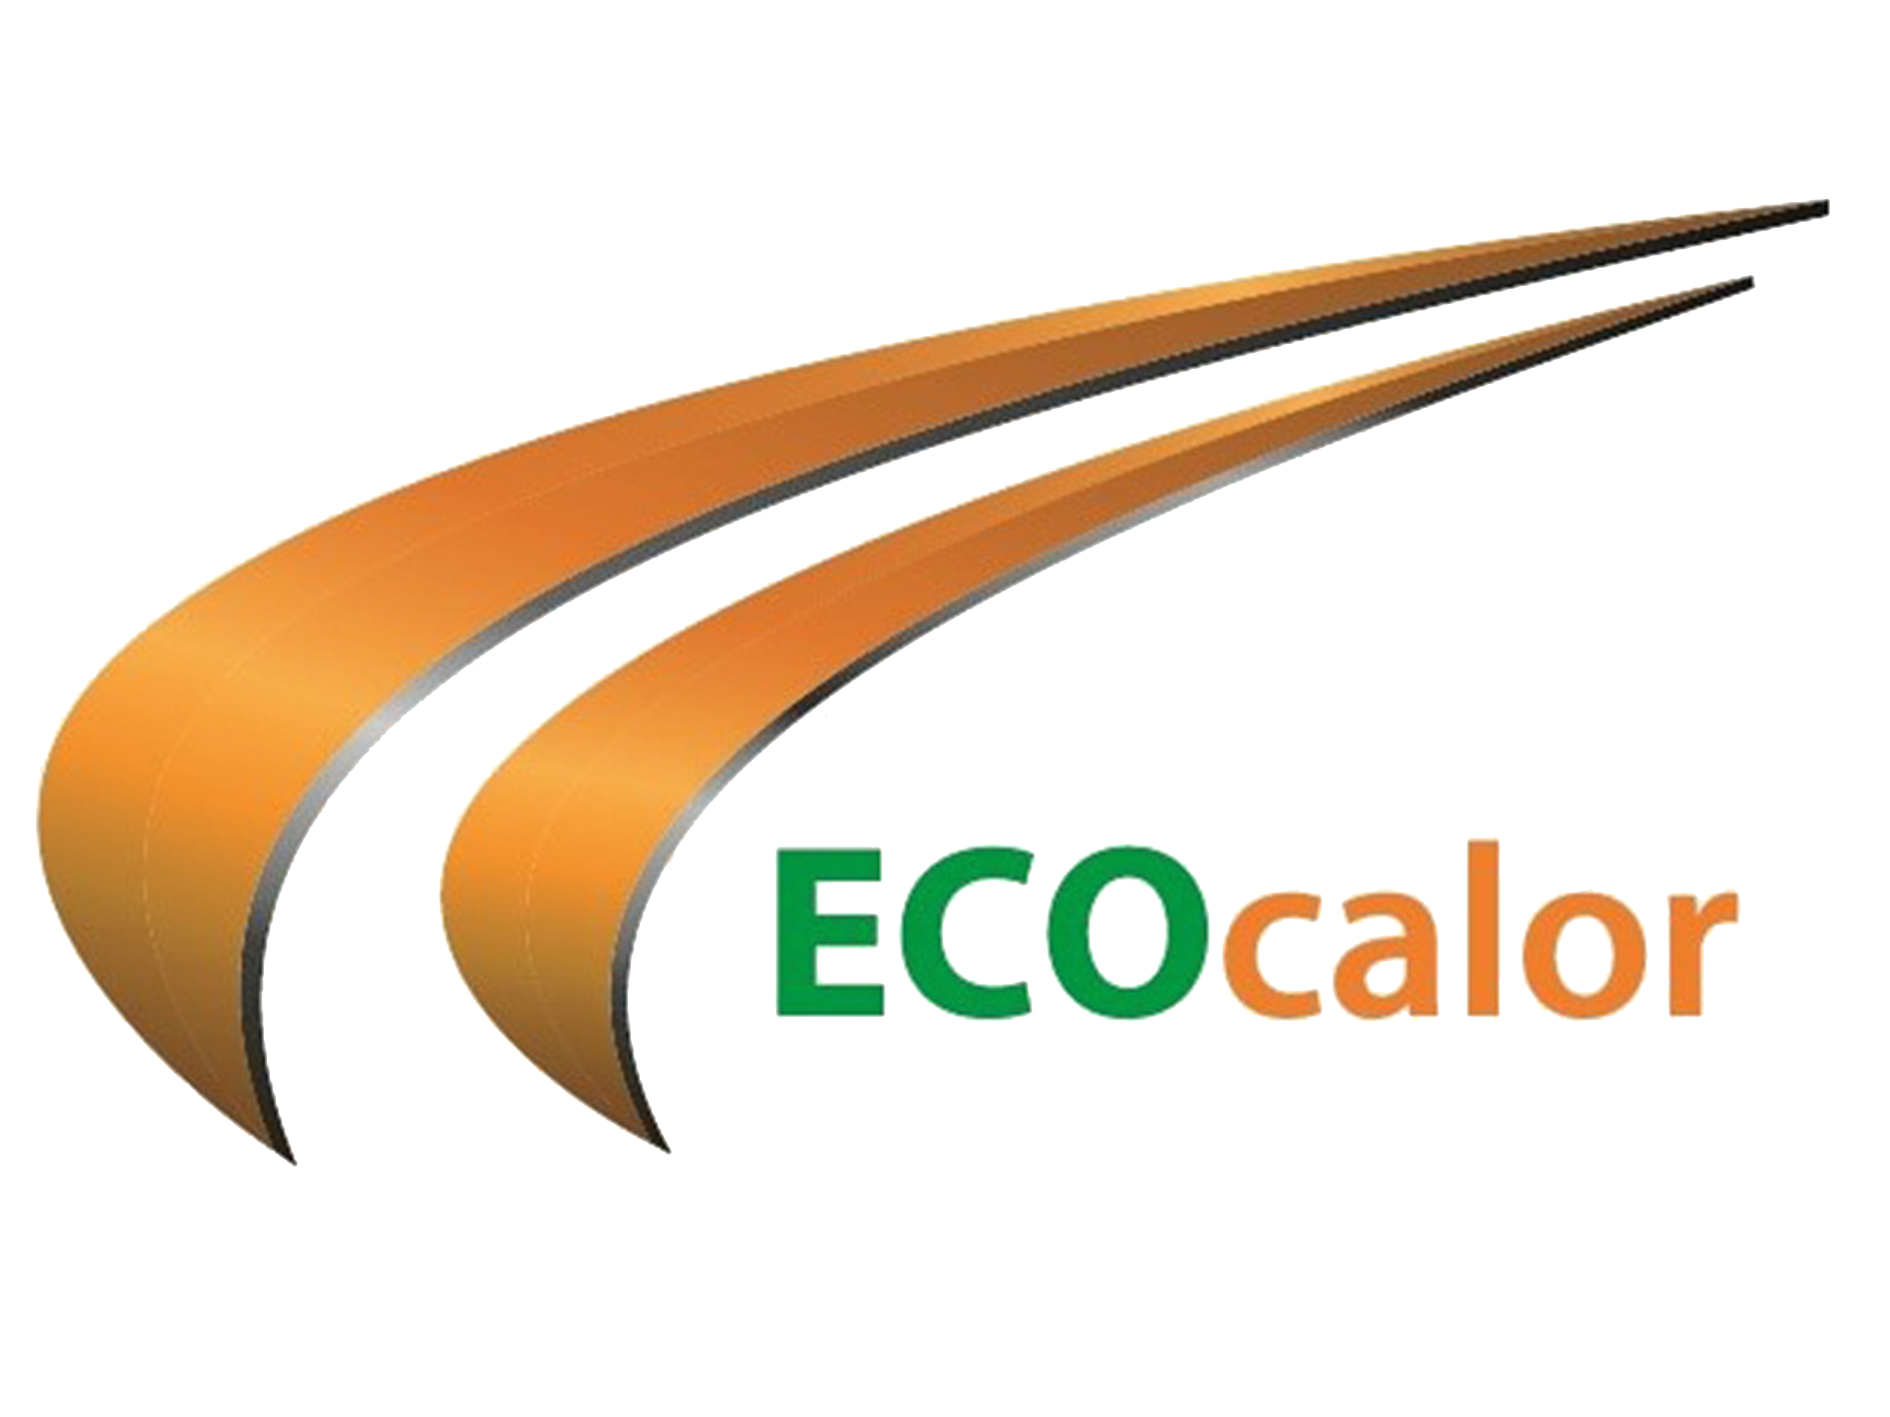 Ecocalor | Calor ecológico infrarrojo calefacción